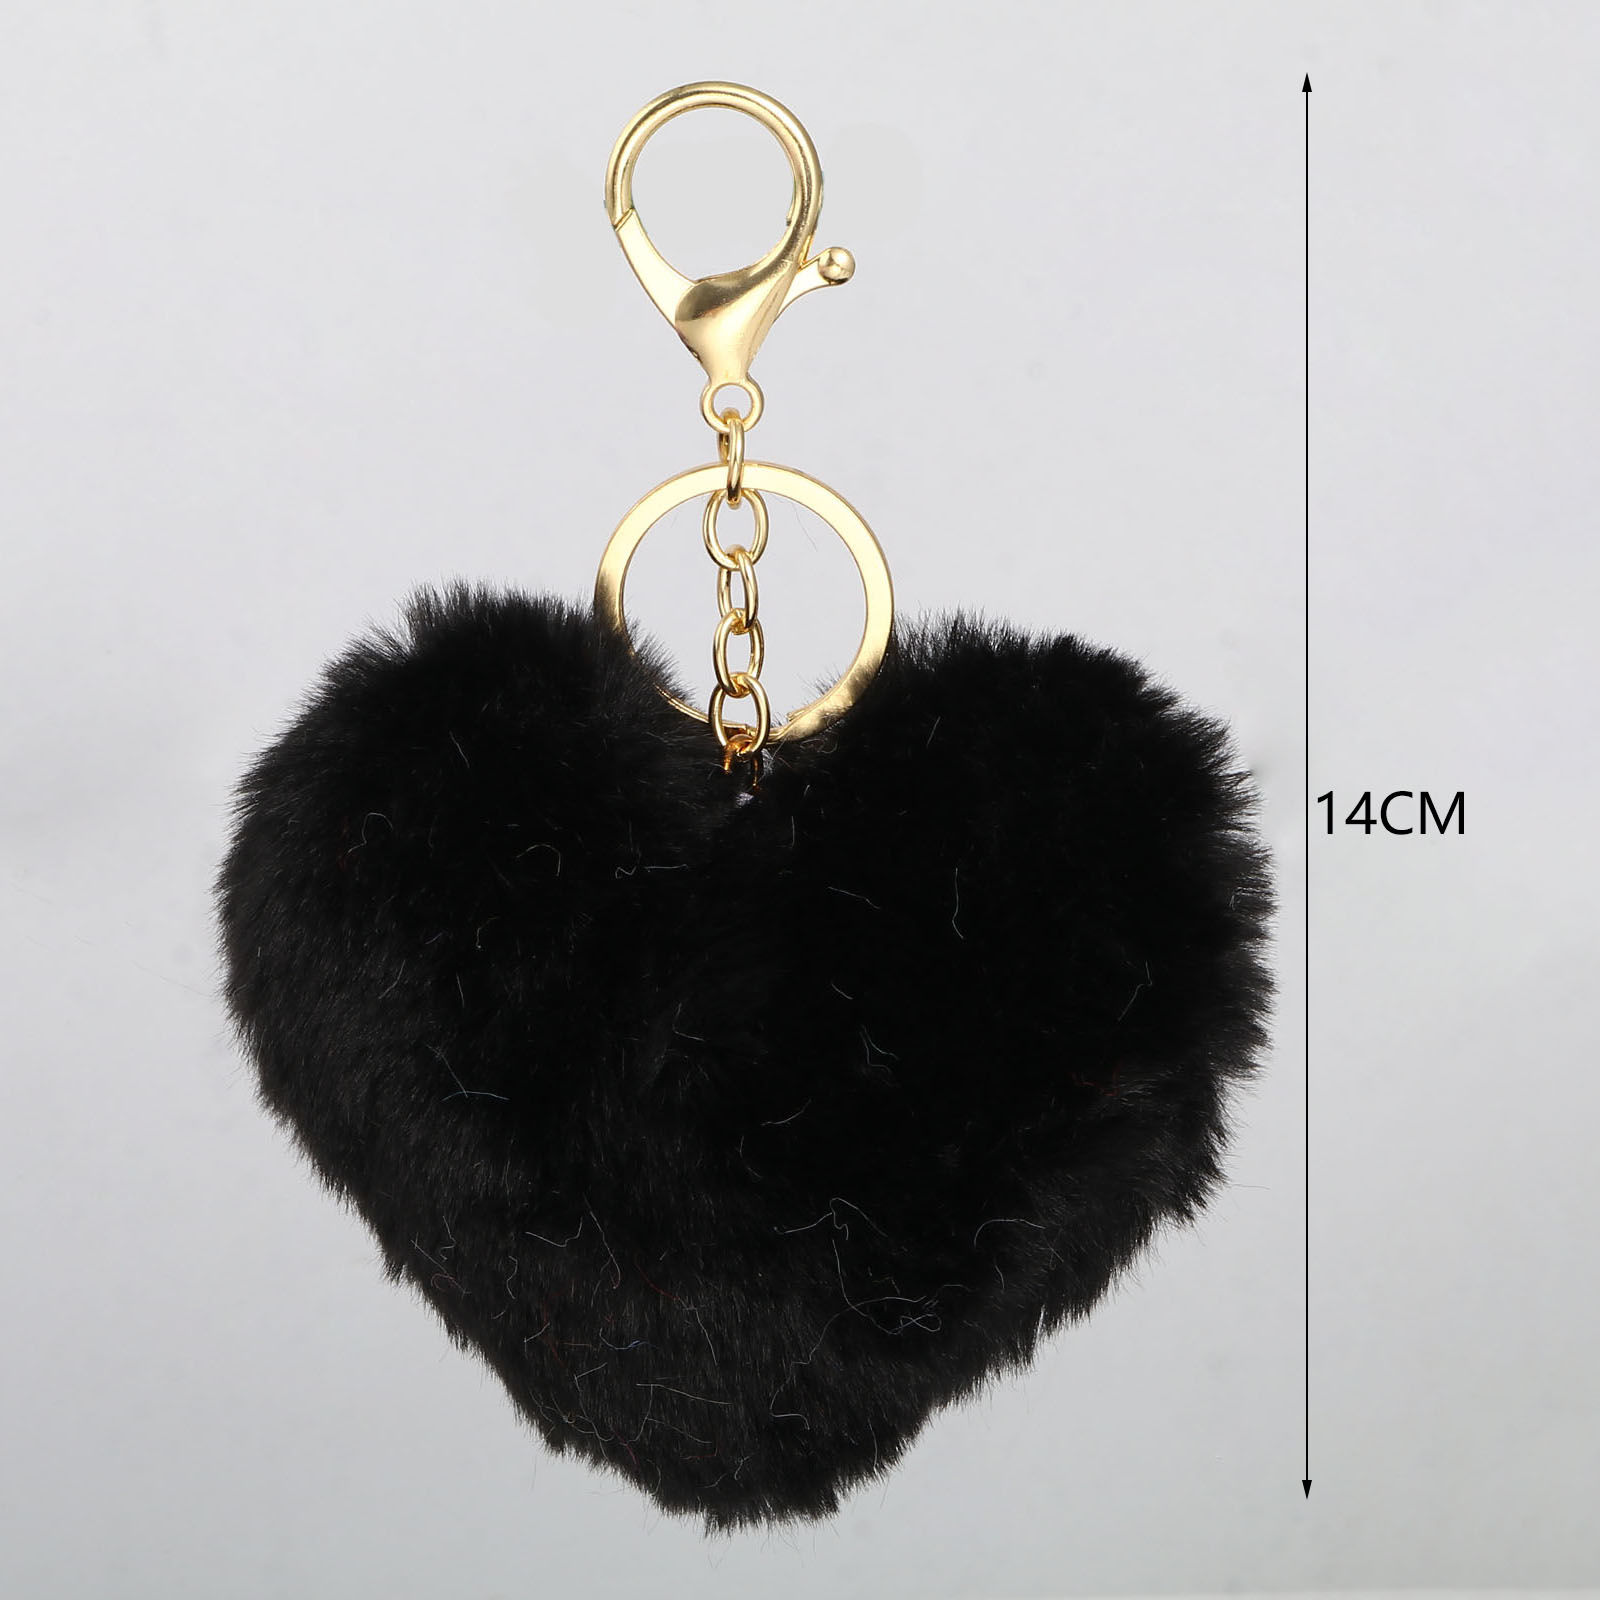 Bild von Plüsch Schlüsselkette & Schlüsselring Vergoldet Bunt Herz 14cm, 2 Stück